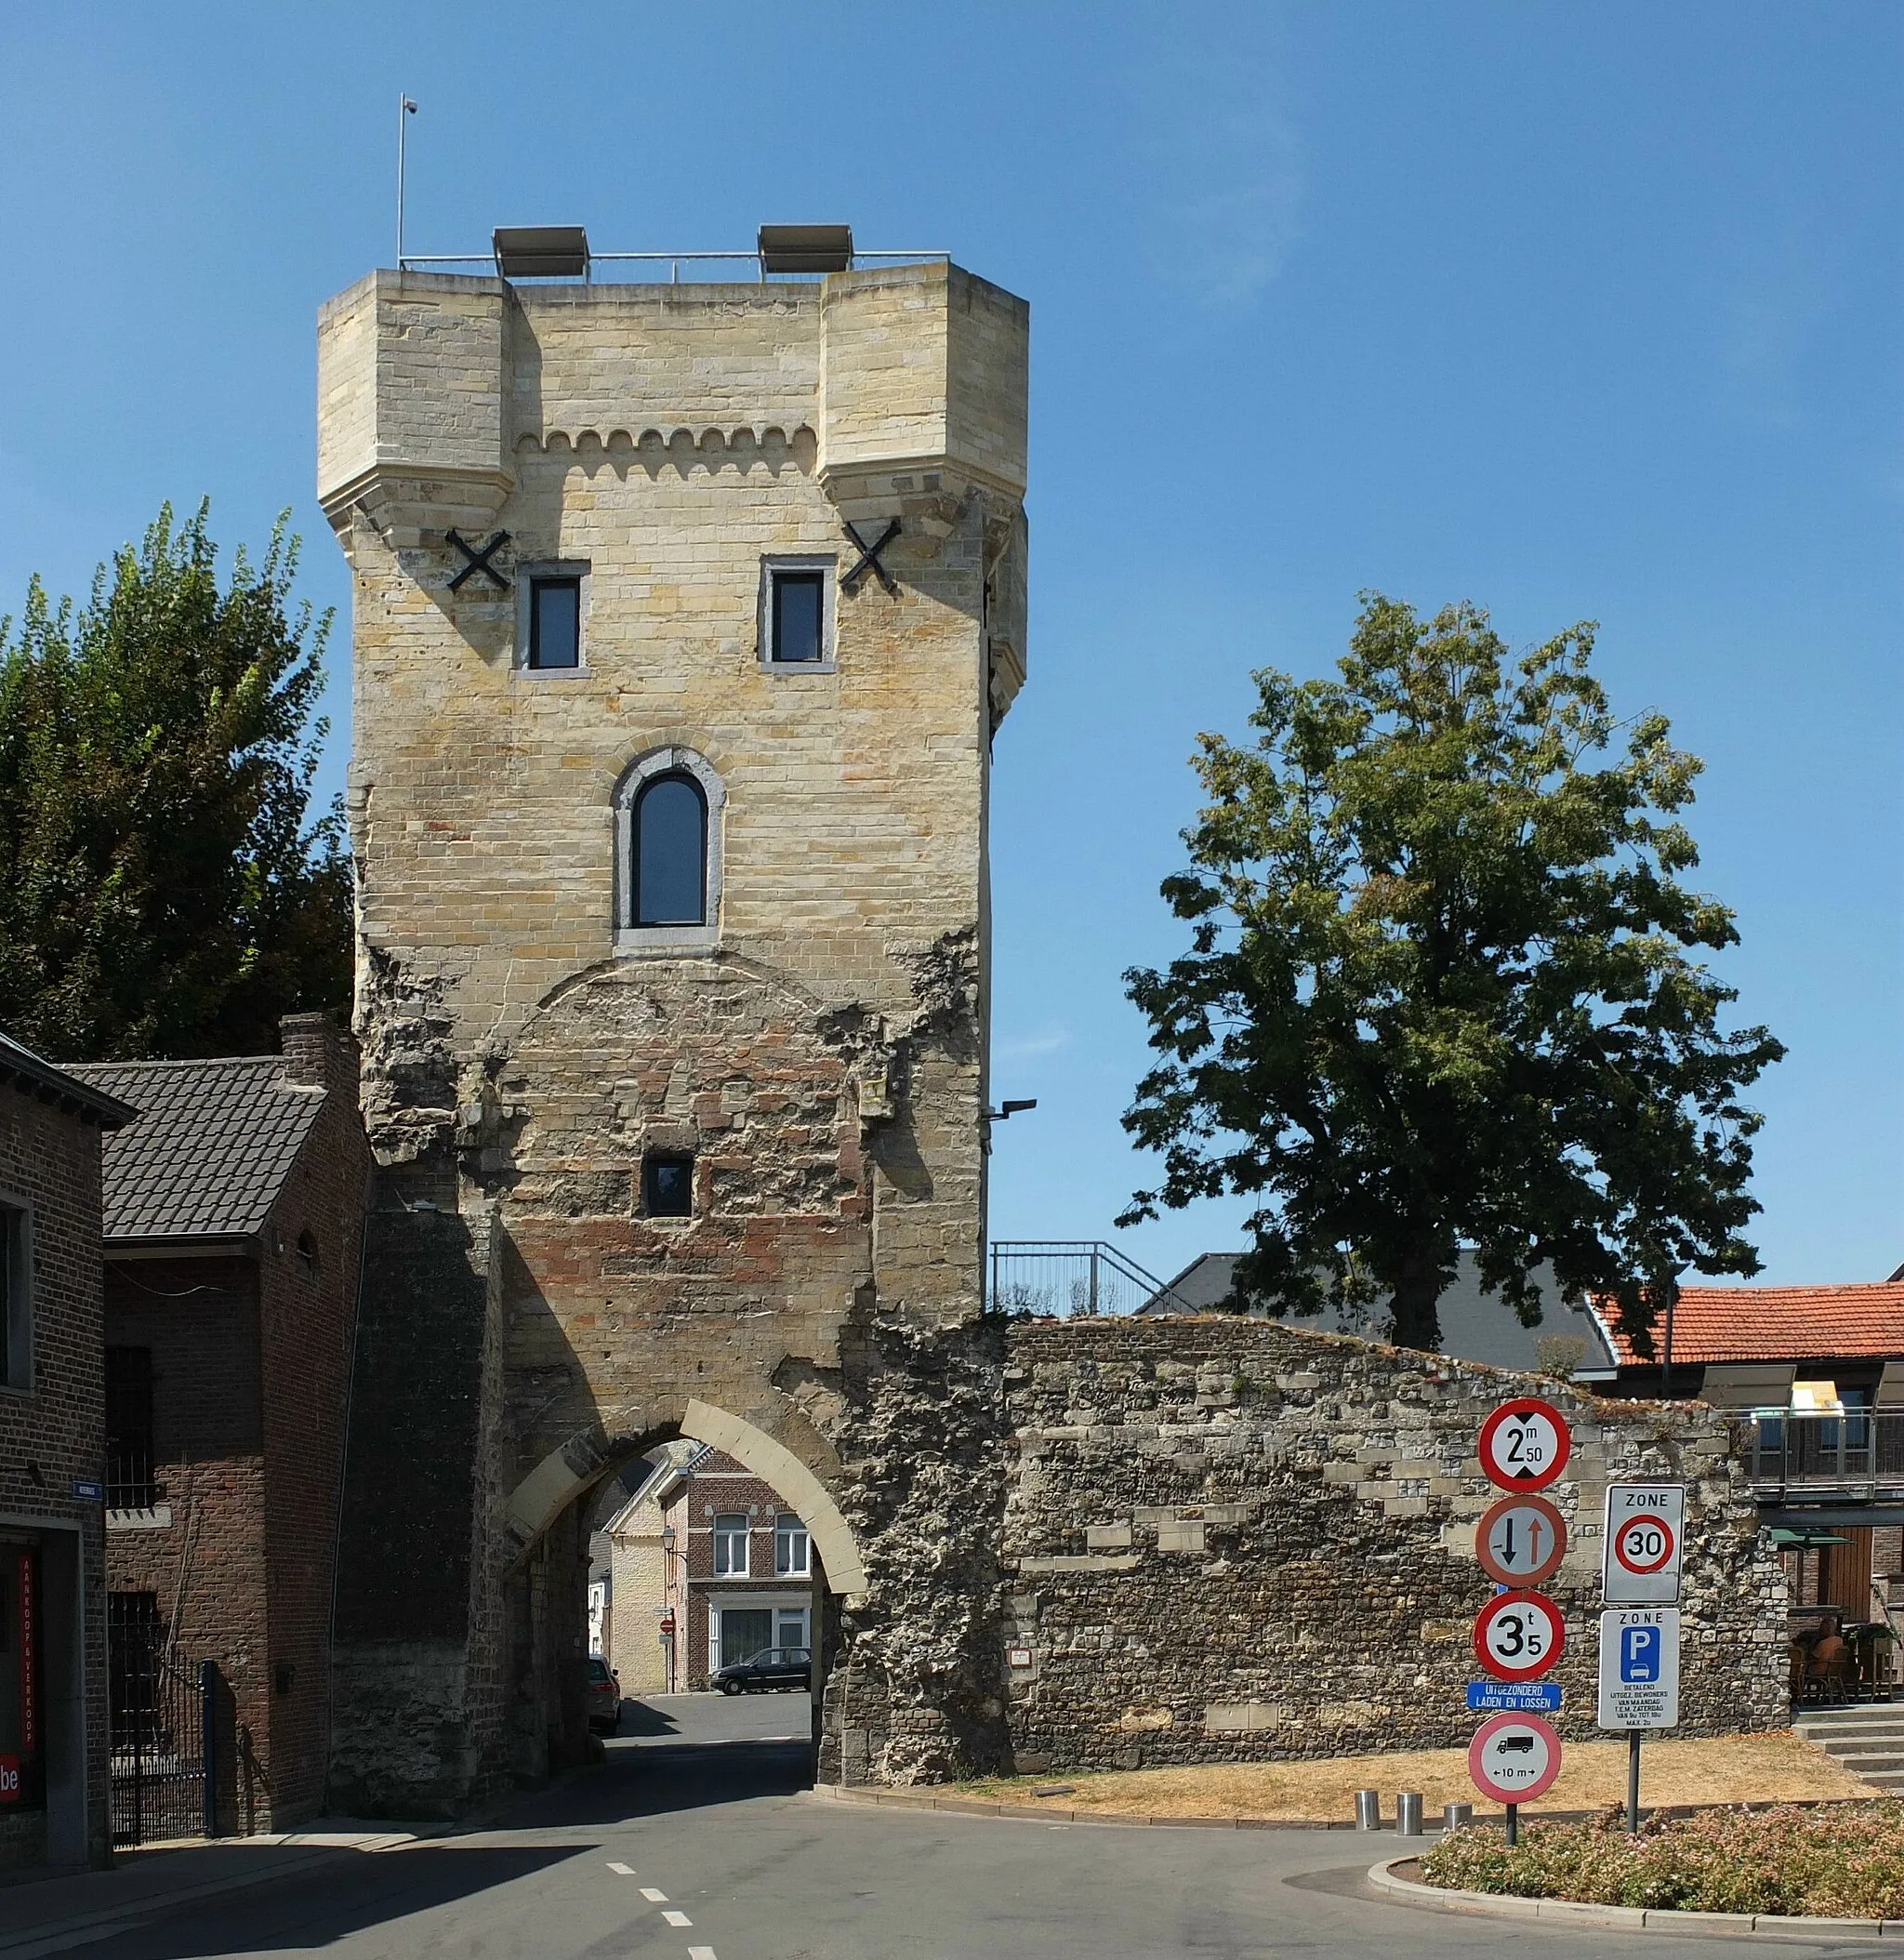 Photo showing: Town gate, so-called "Moerenpoort" in Tongeren, Belgium.